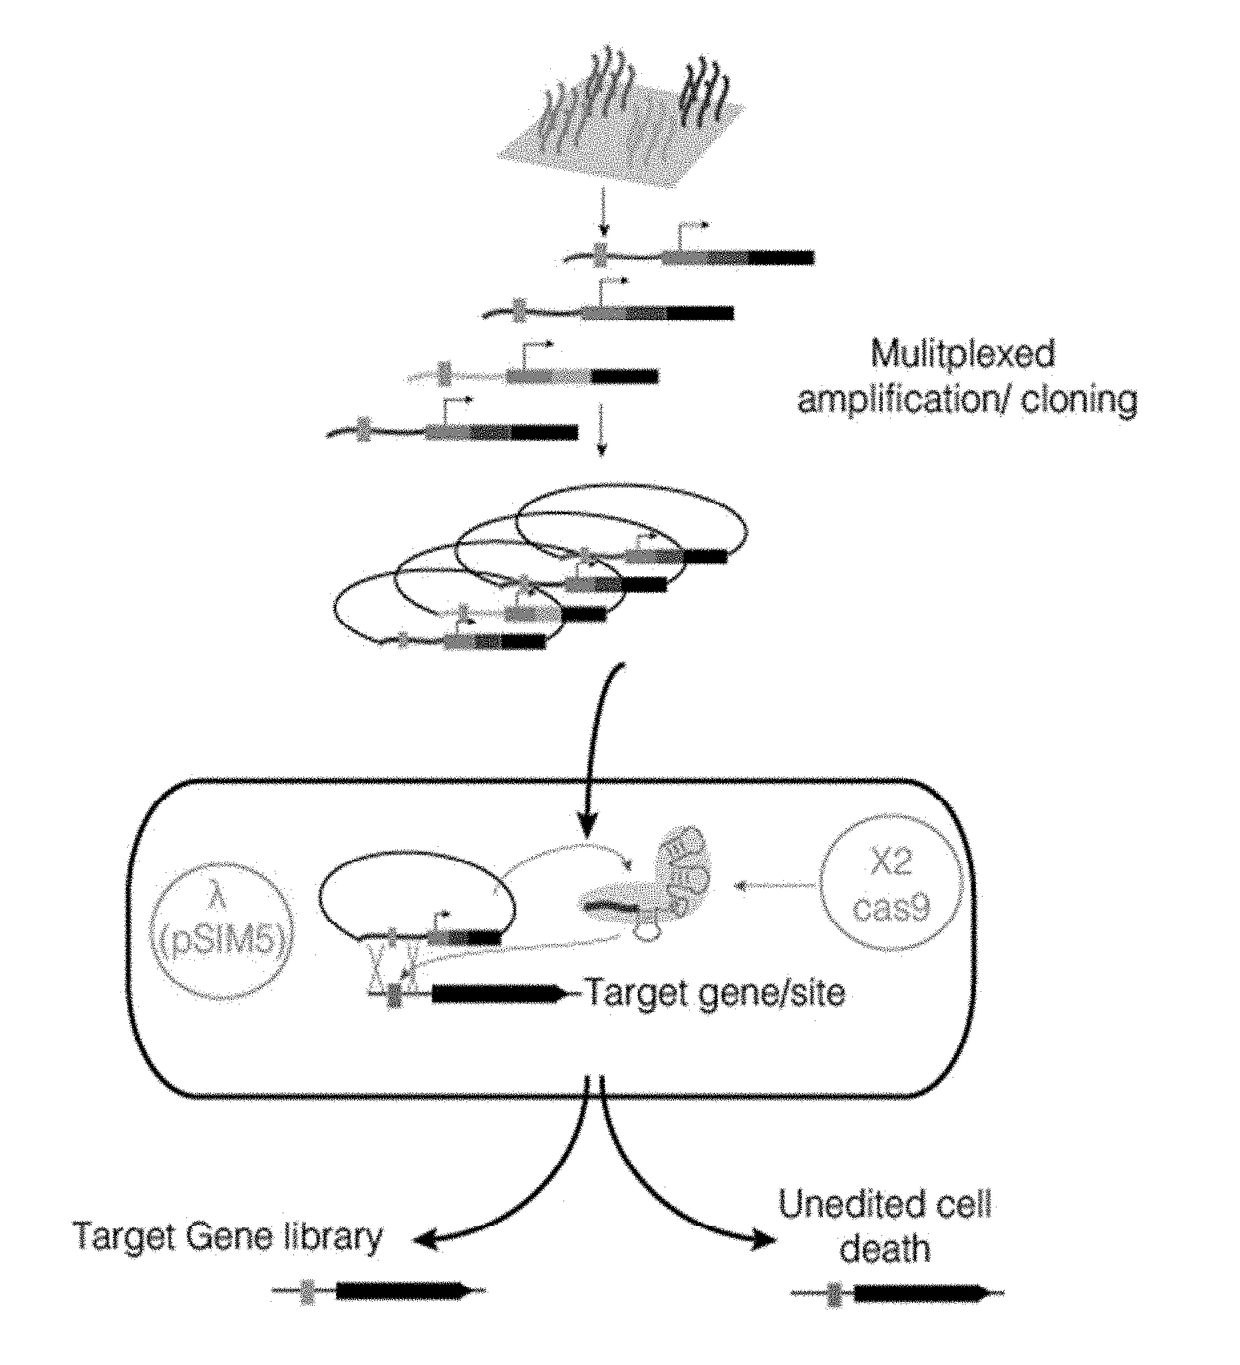 Crispr enabled multiplexed genome engineering